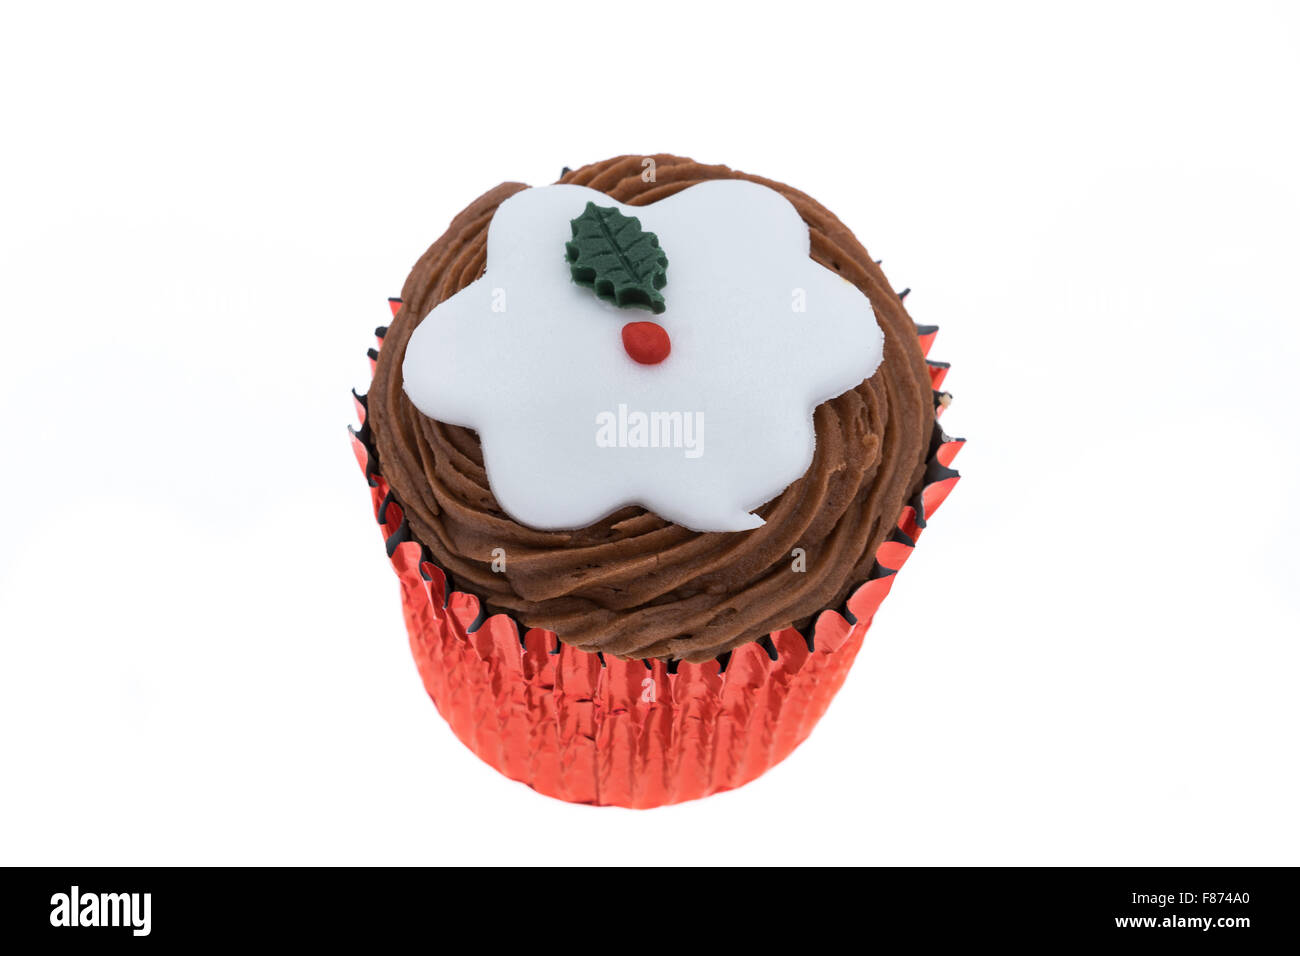 Cupcake mit einer dekorierten Weihnachtsmotiv einen Christmas Pudding - Studio gedreht mit einem weißen Hintergrund Stockfoto